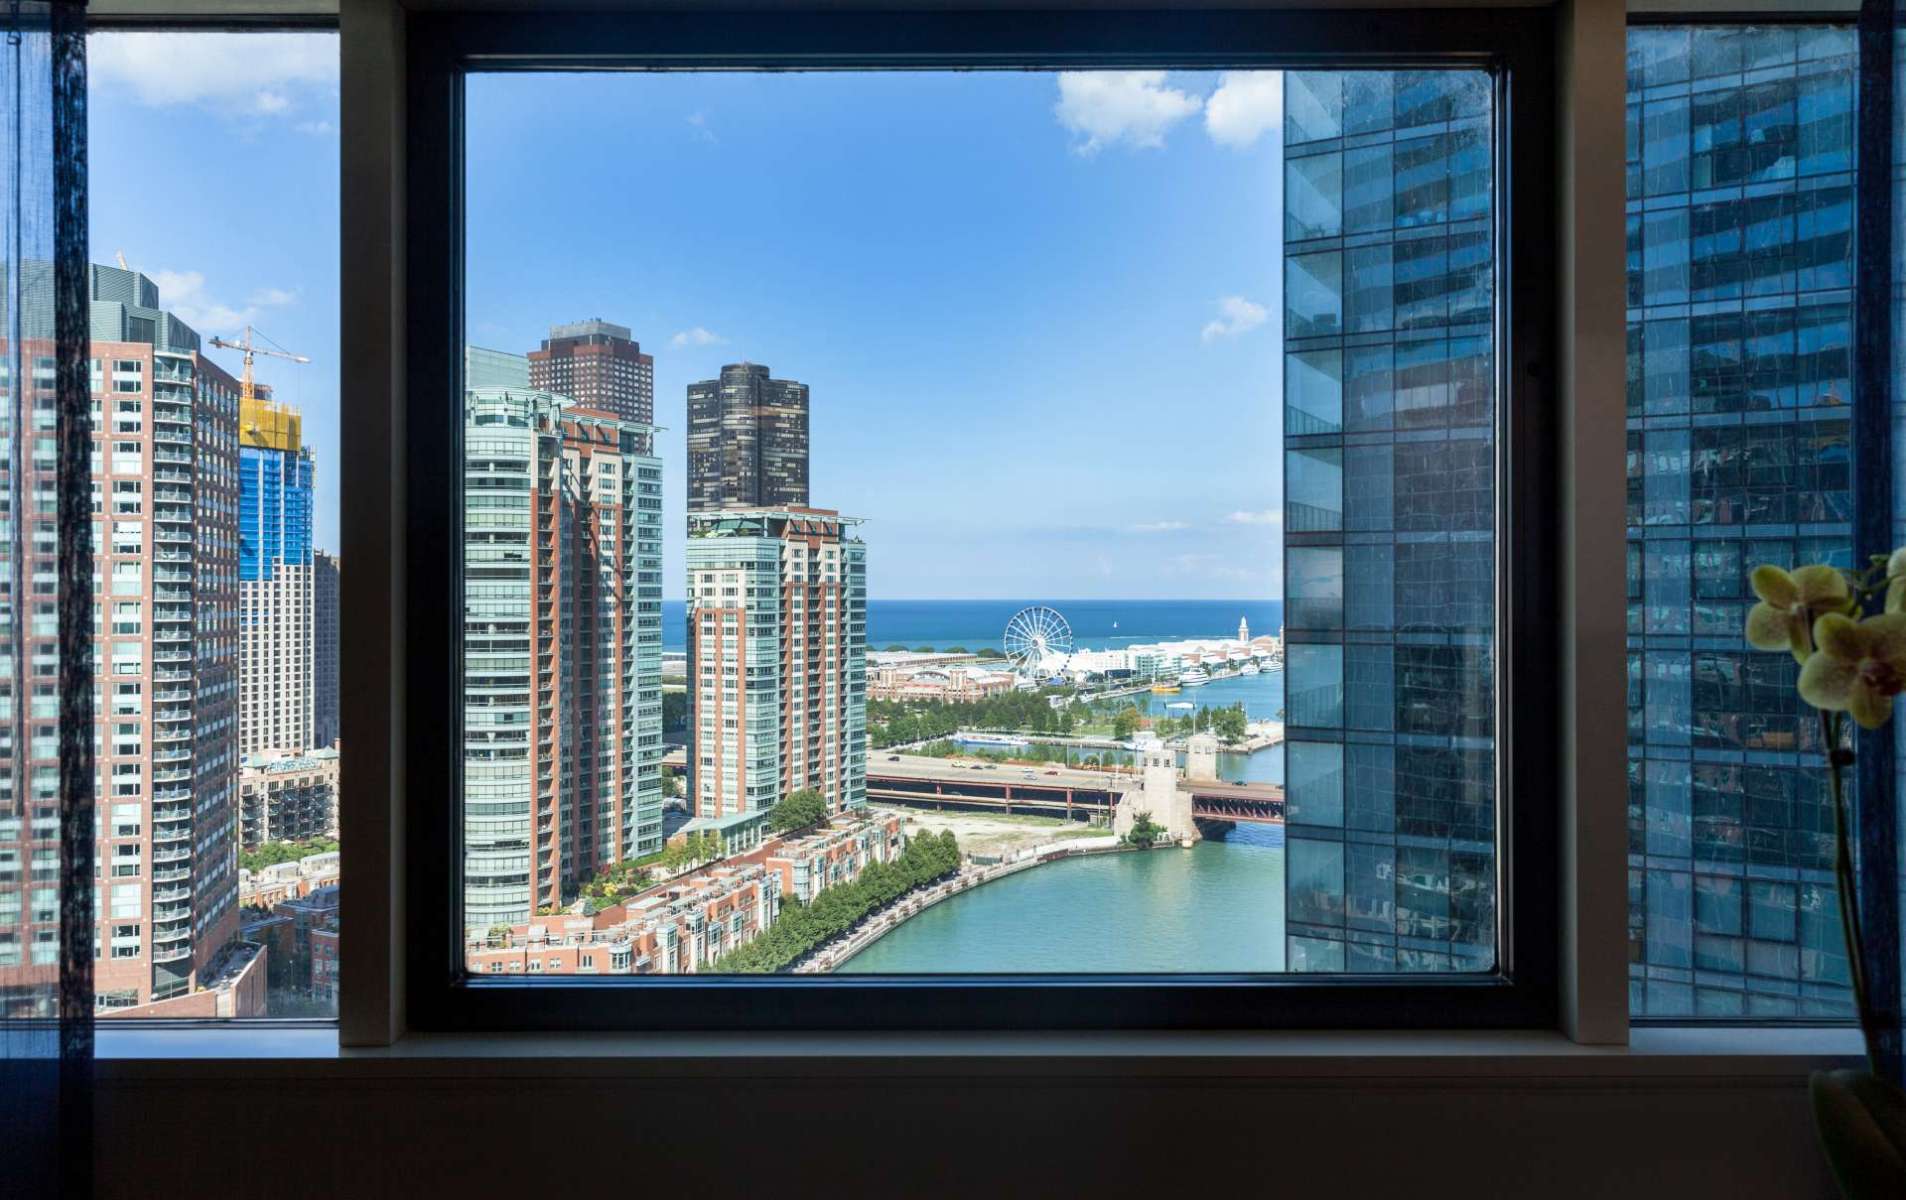 4th of july hotel deals swissotel window view